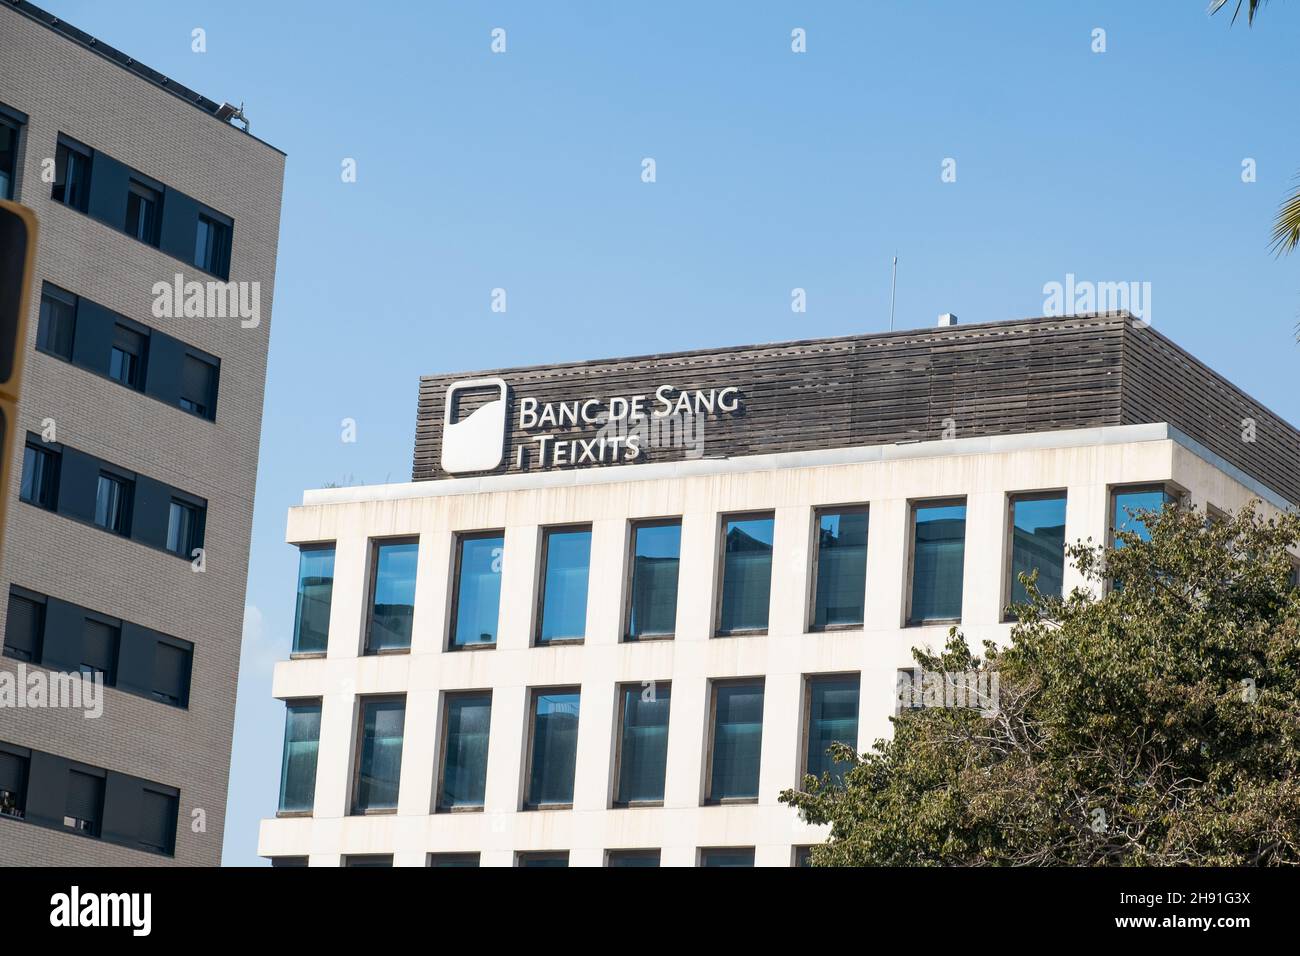 Barcelona, España - 5 de noviembre de 2021: Edificio Banc de Sang i Teixits, Editorial Ilustrativa. Foto de stock